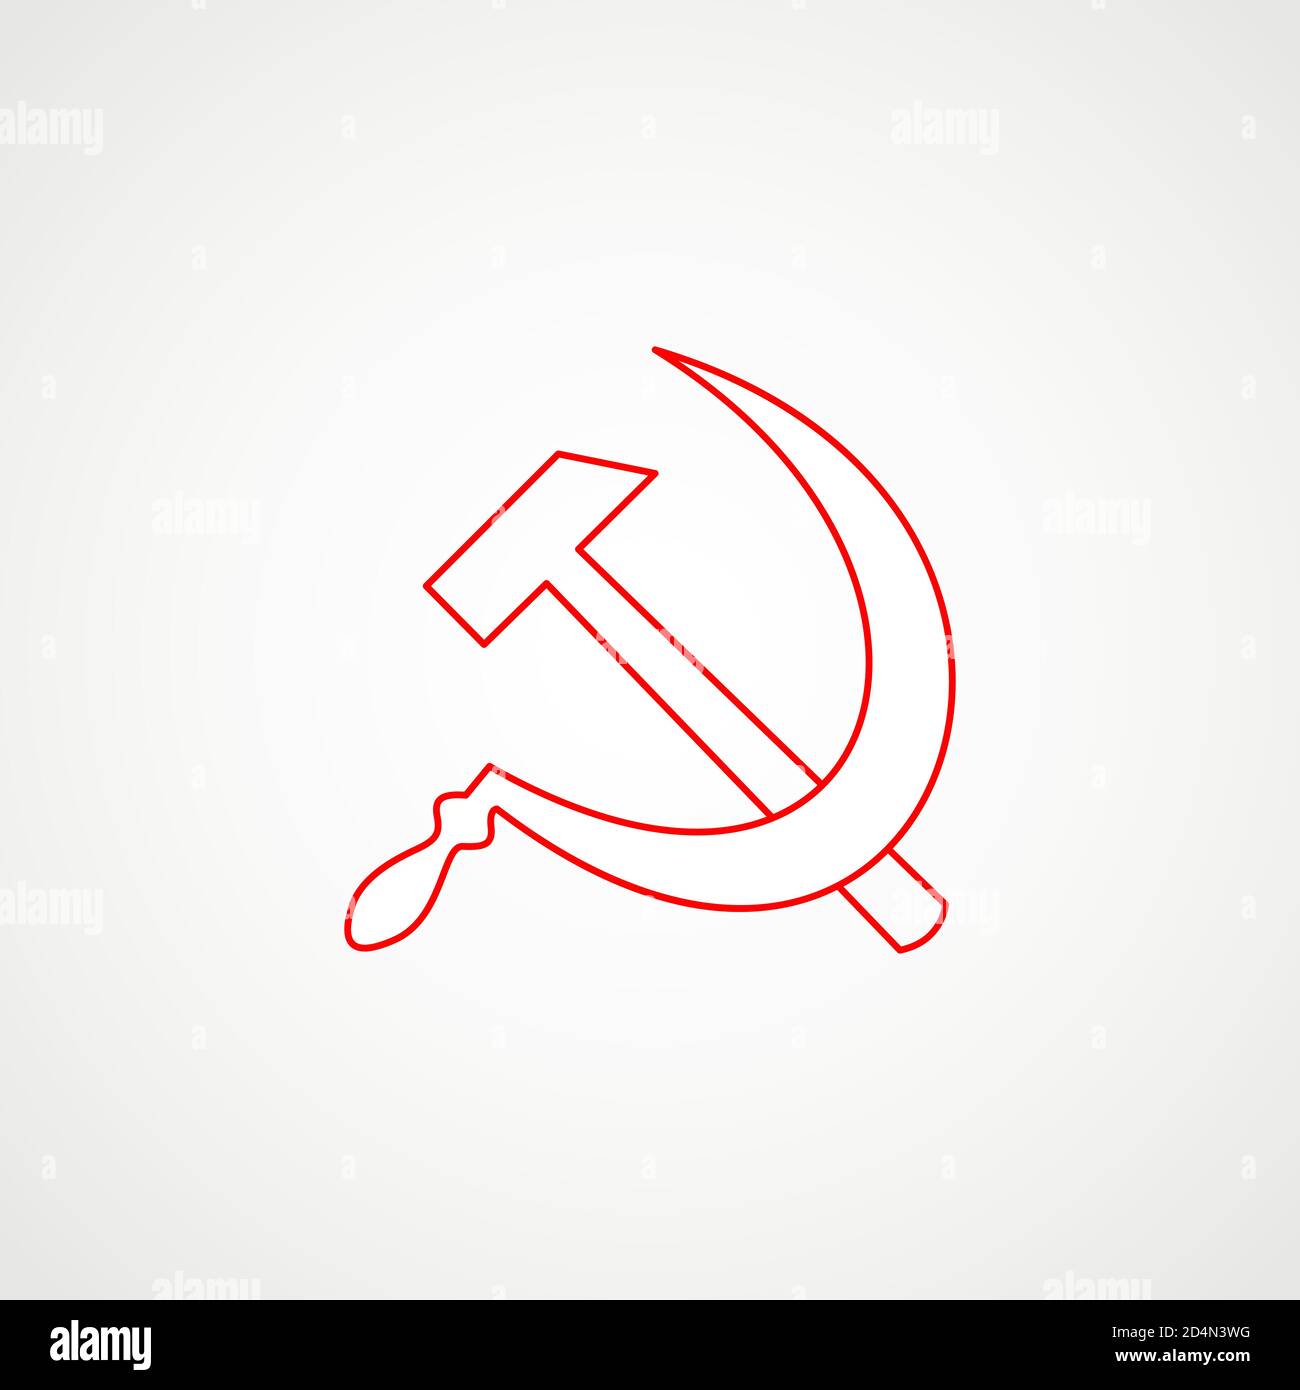 Lineare Ikone des Kommunismus. Hammer mit Sichel. Rotes sowjetisches Emblem. Minimalistisches Wappen der UdSSR. Vektor Stock Vektor